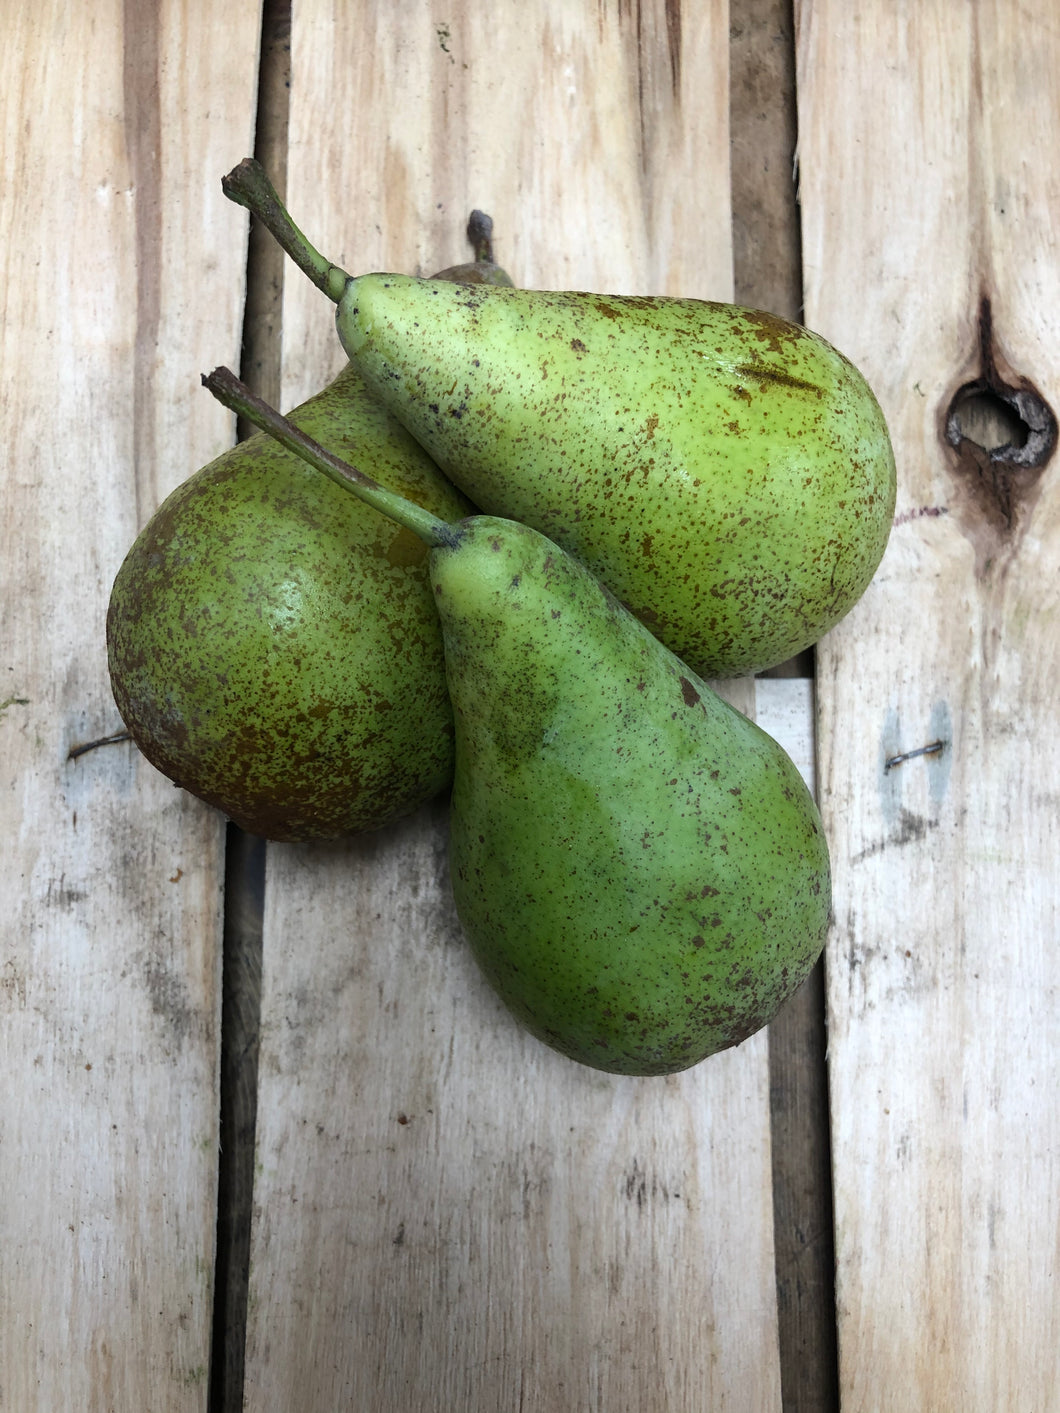 Organic Pears - 95c each